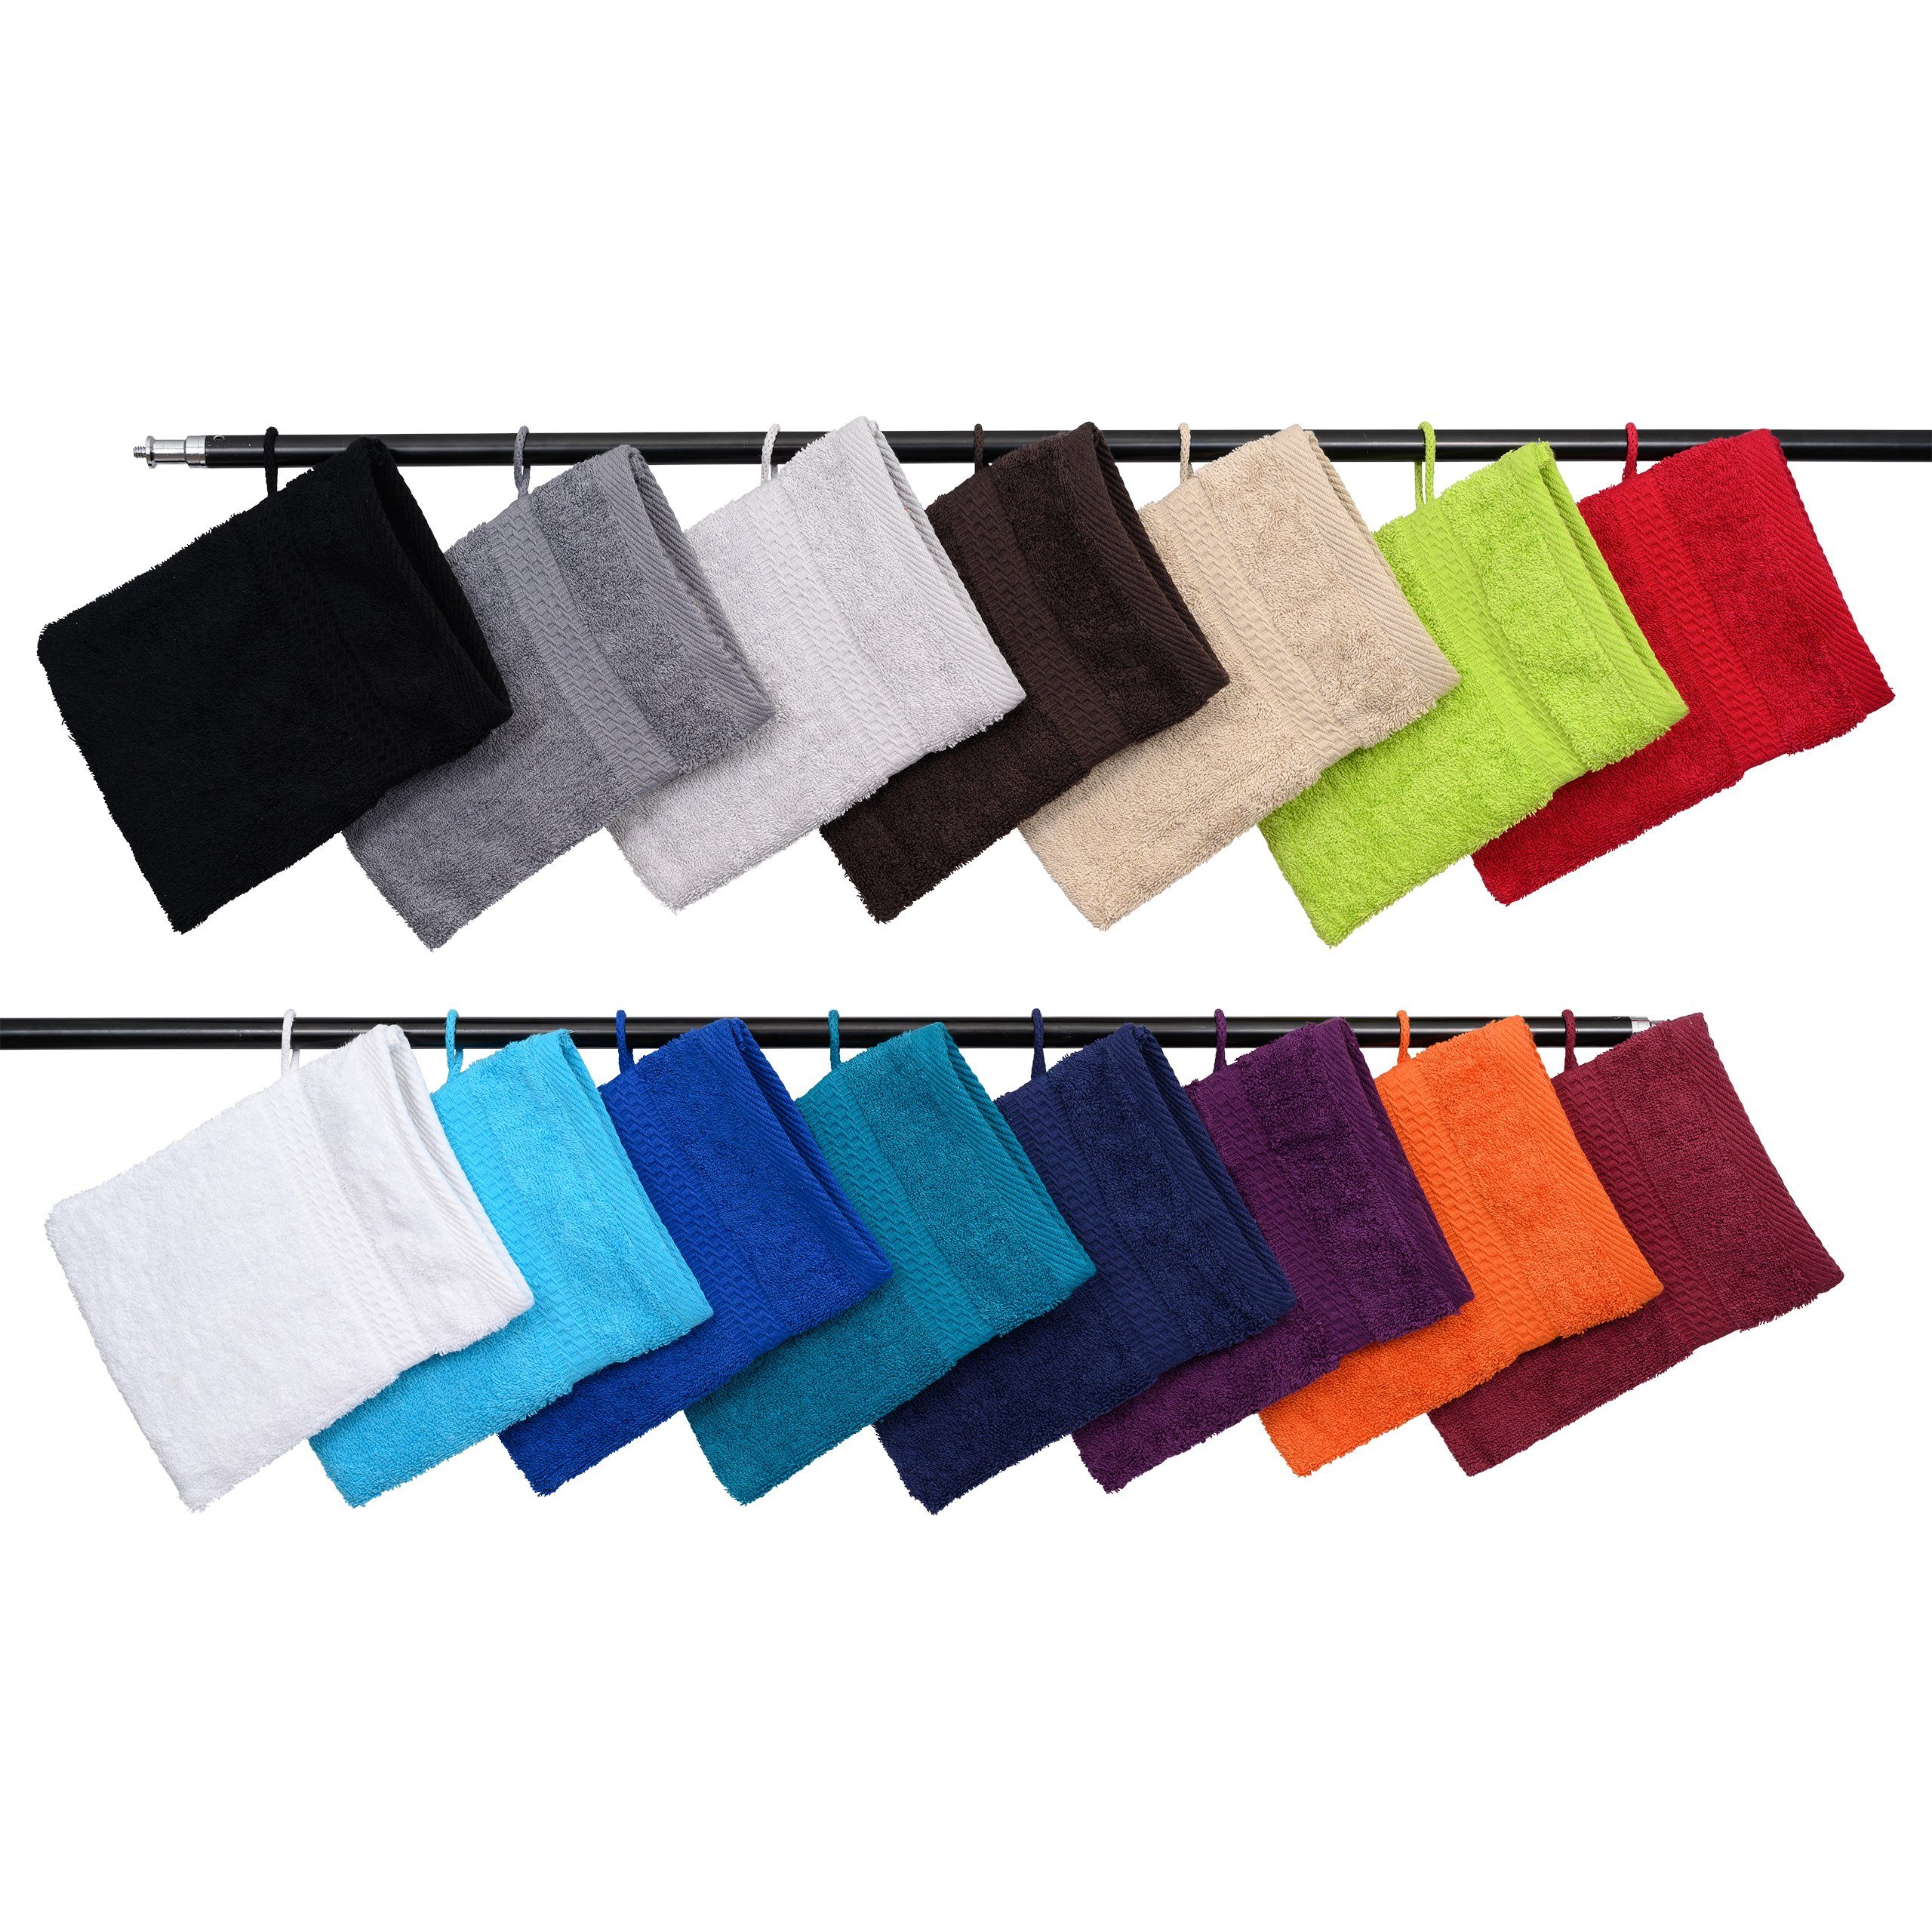 Hometex Premium Textiles Waschhandschuh Waschhandschuh in vielen verschiedenen Farben & im praktischen 10er Set Weiß